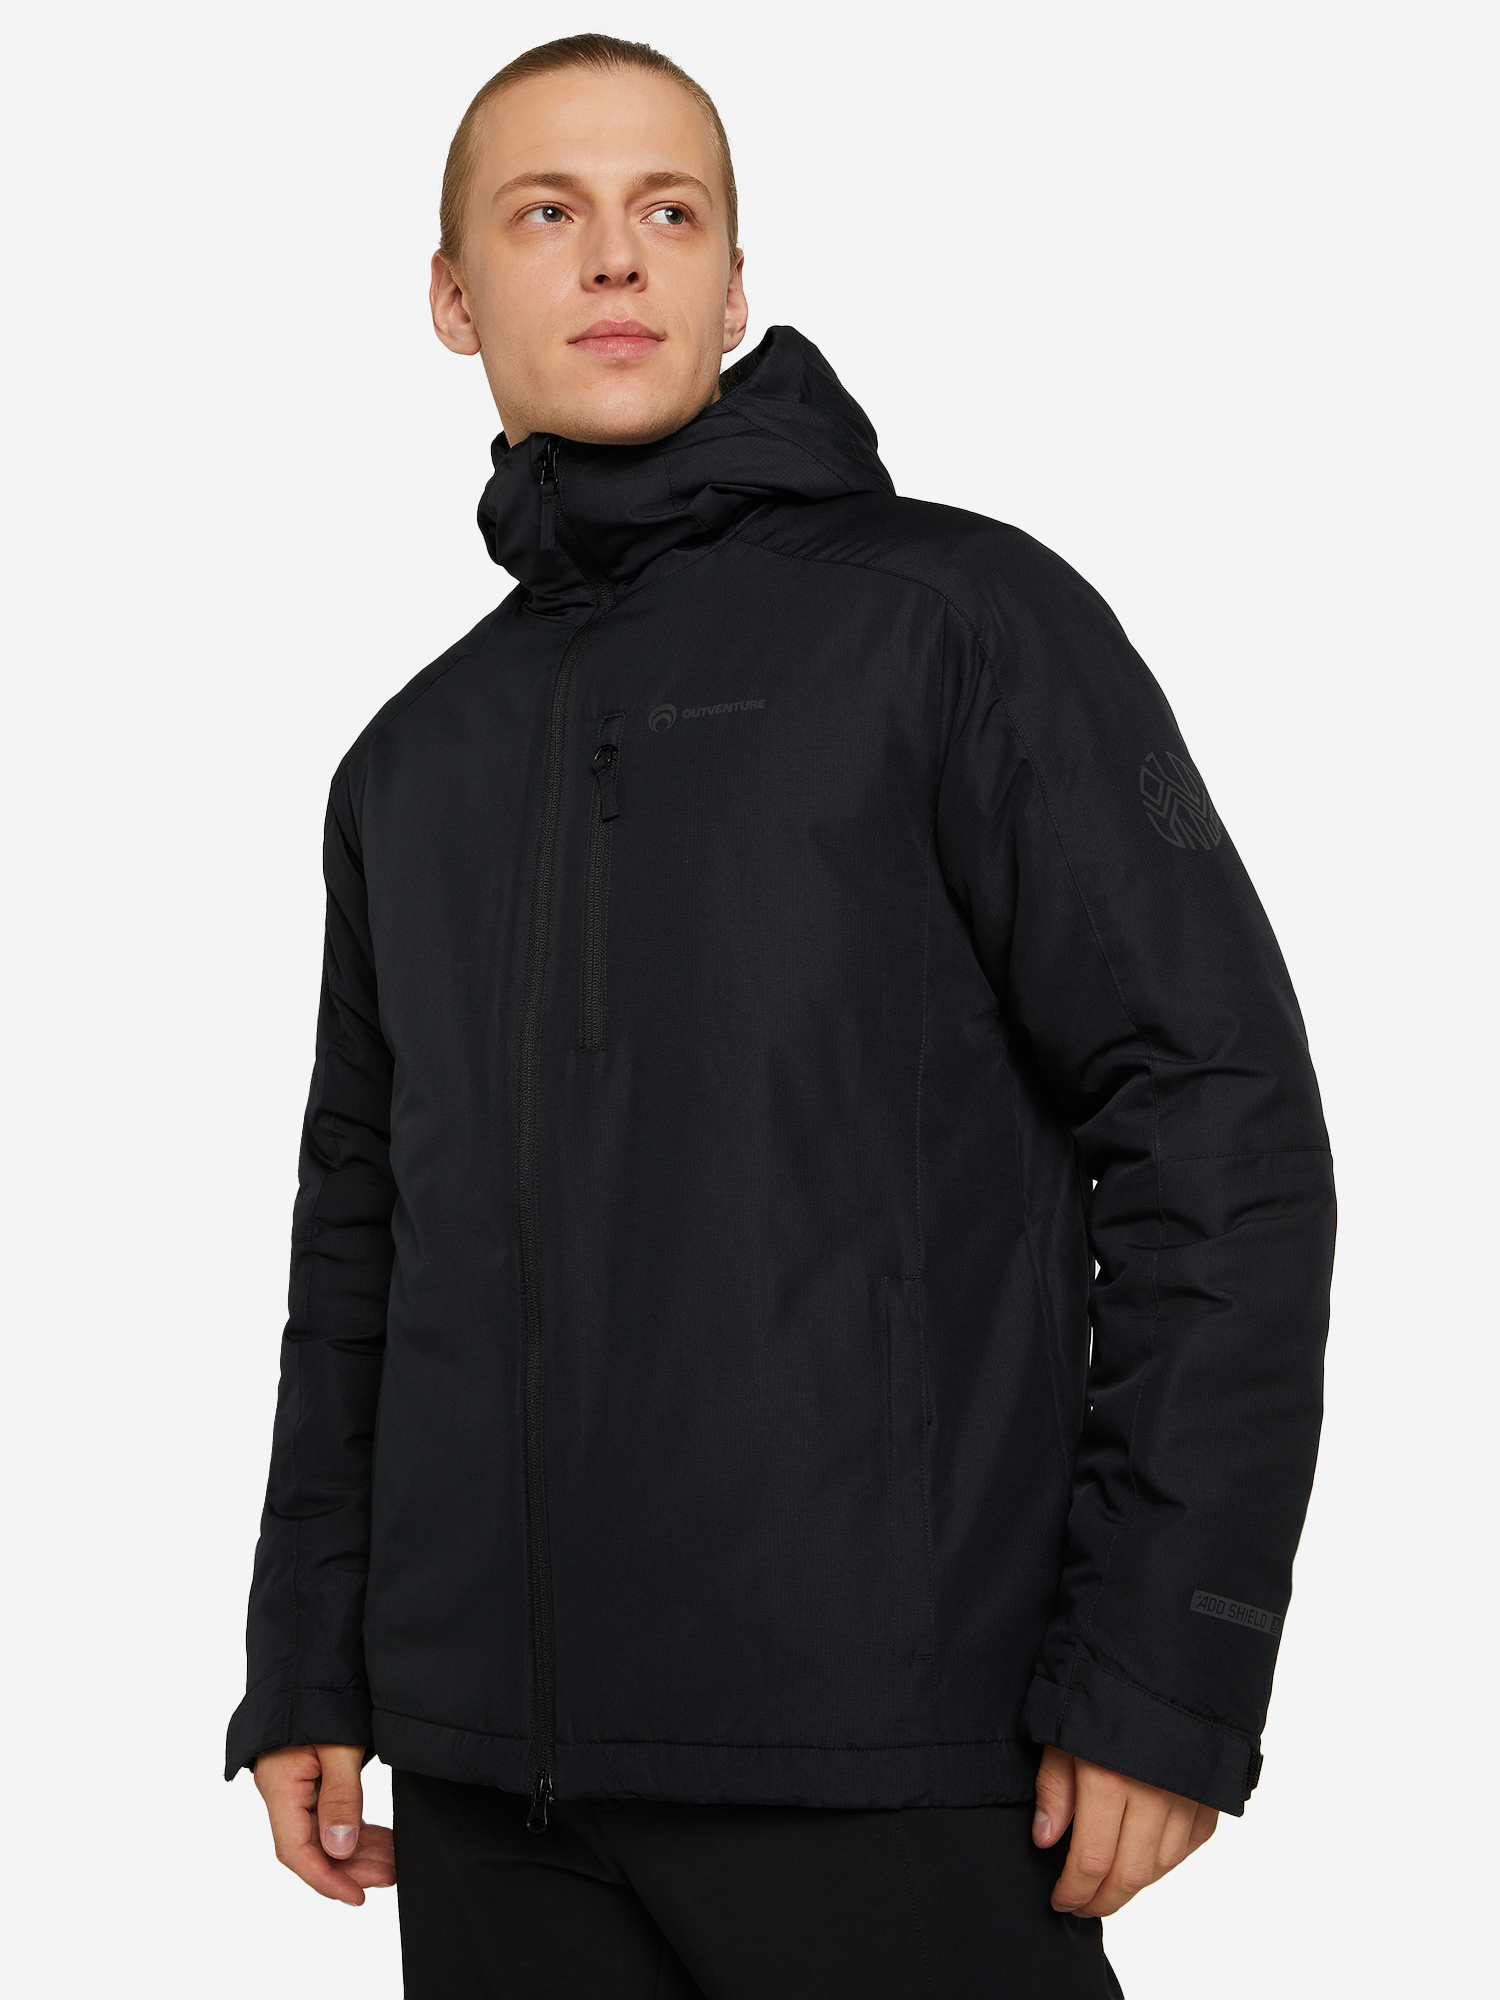 Куртка утепленная мужская Outventure, Черный куртка софтшелл мужская outventure серый